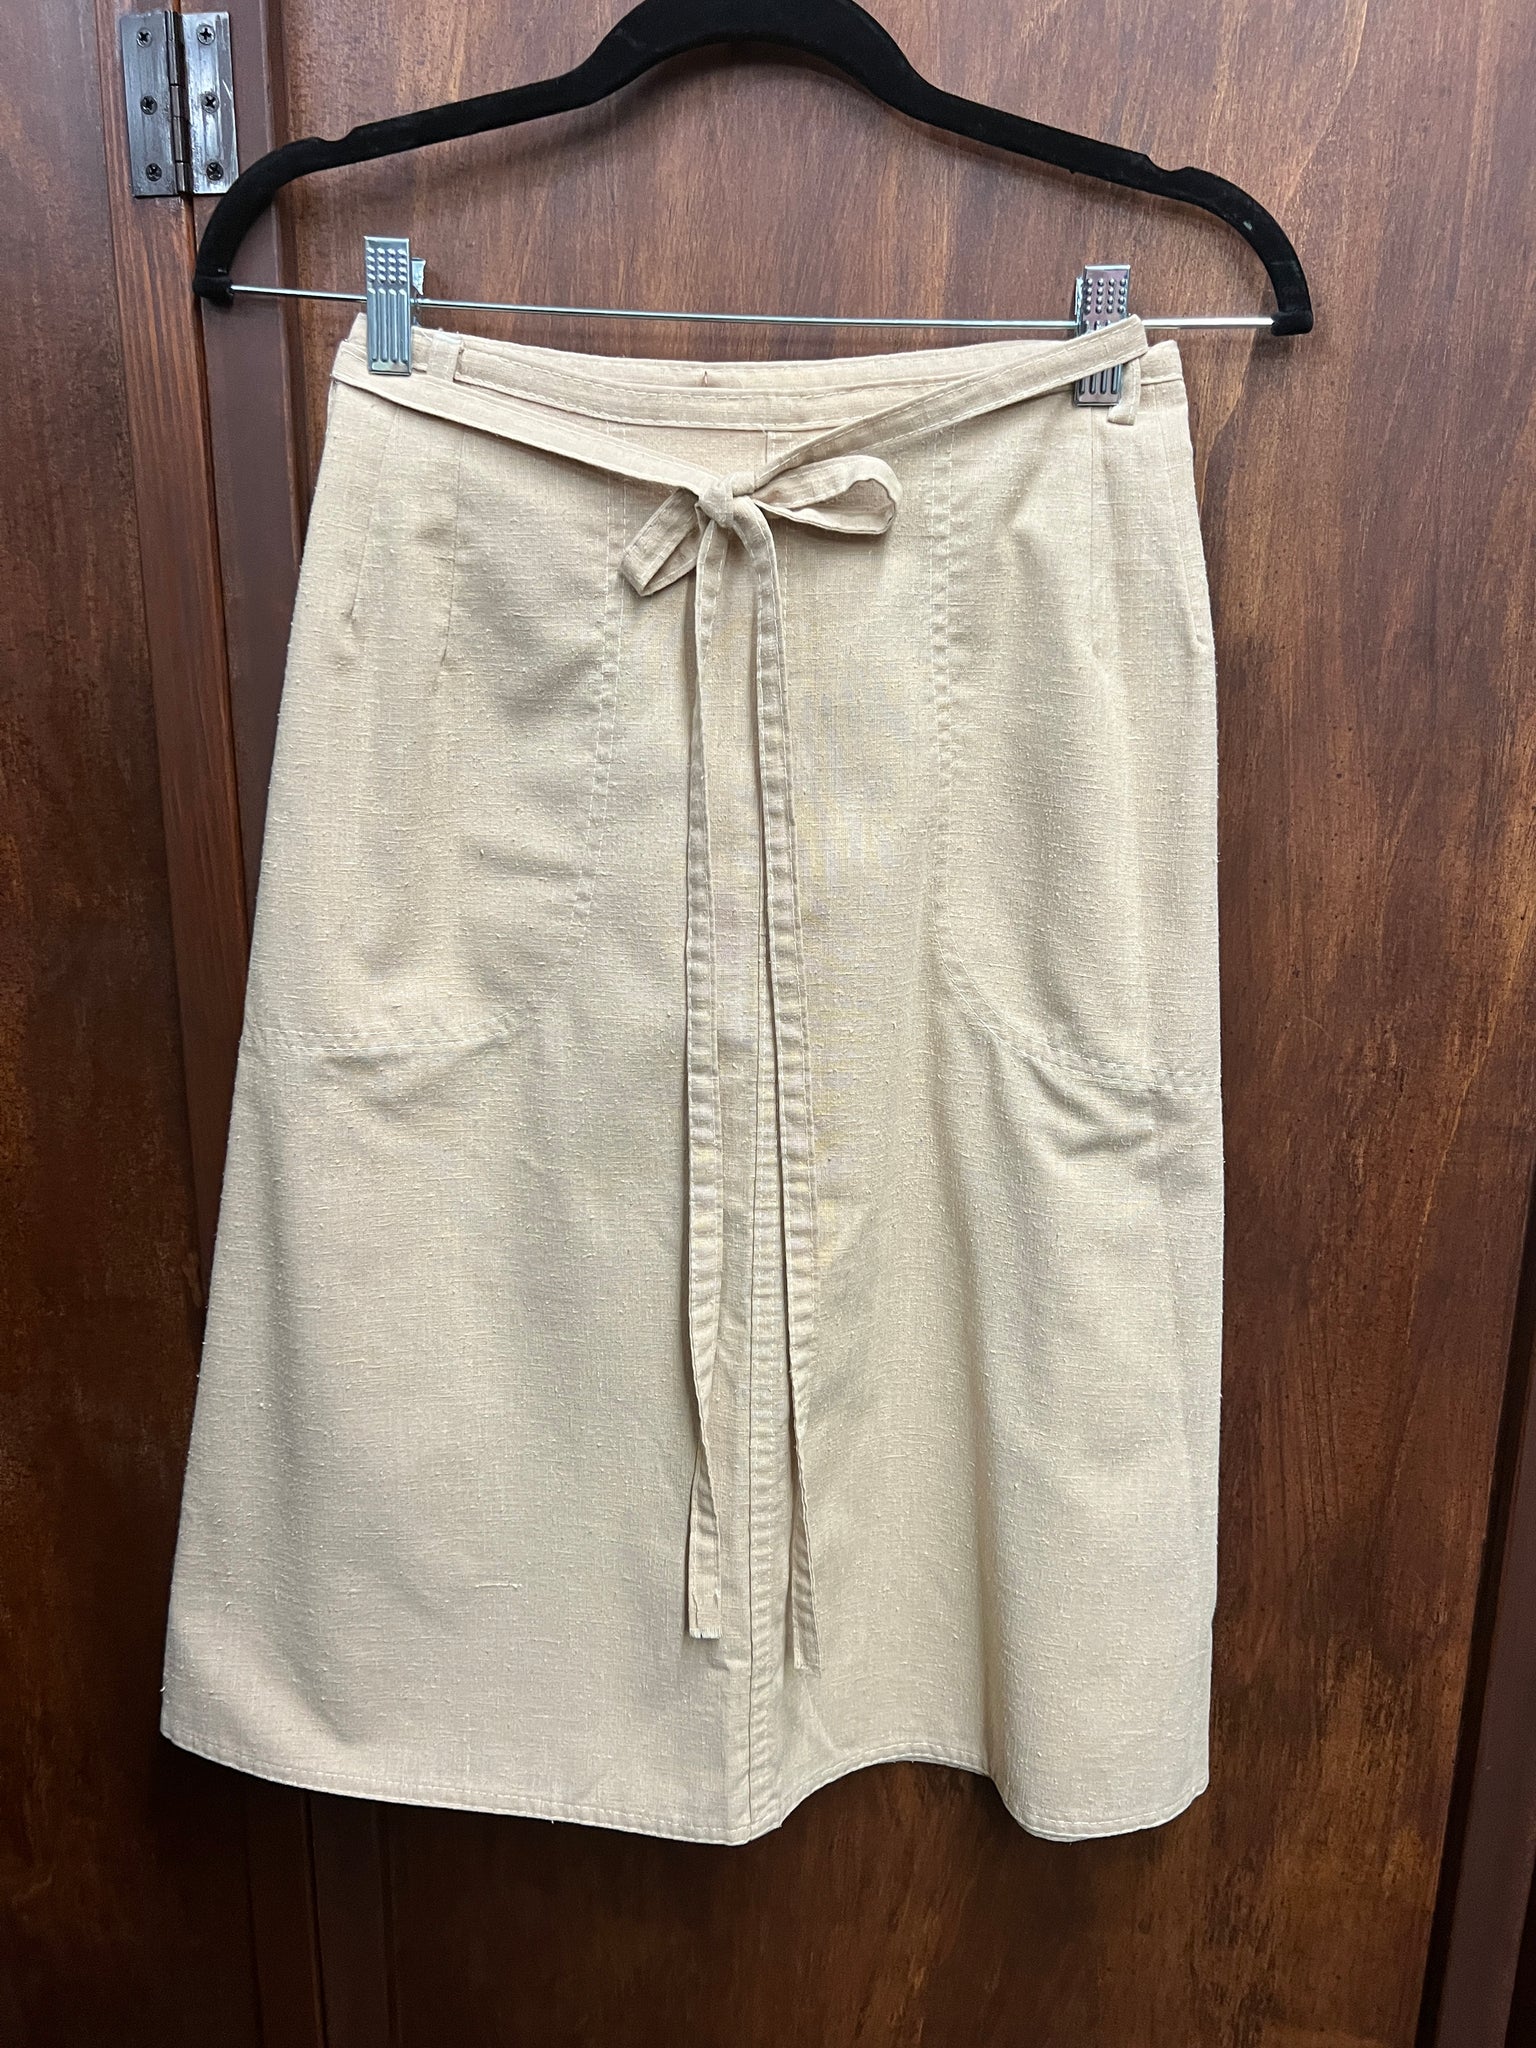 1970s-SKIRT- Century tan wrap skirt aline